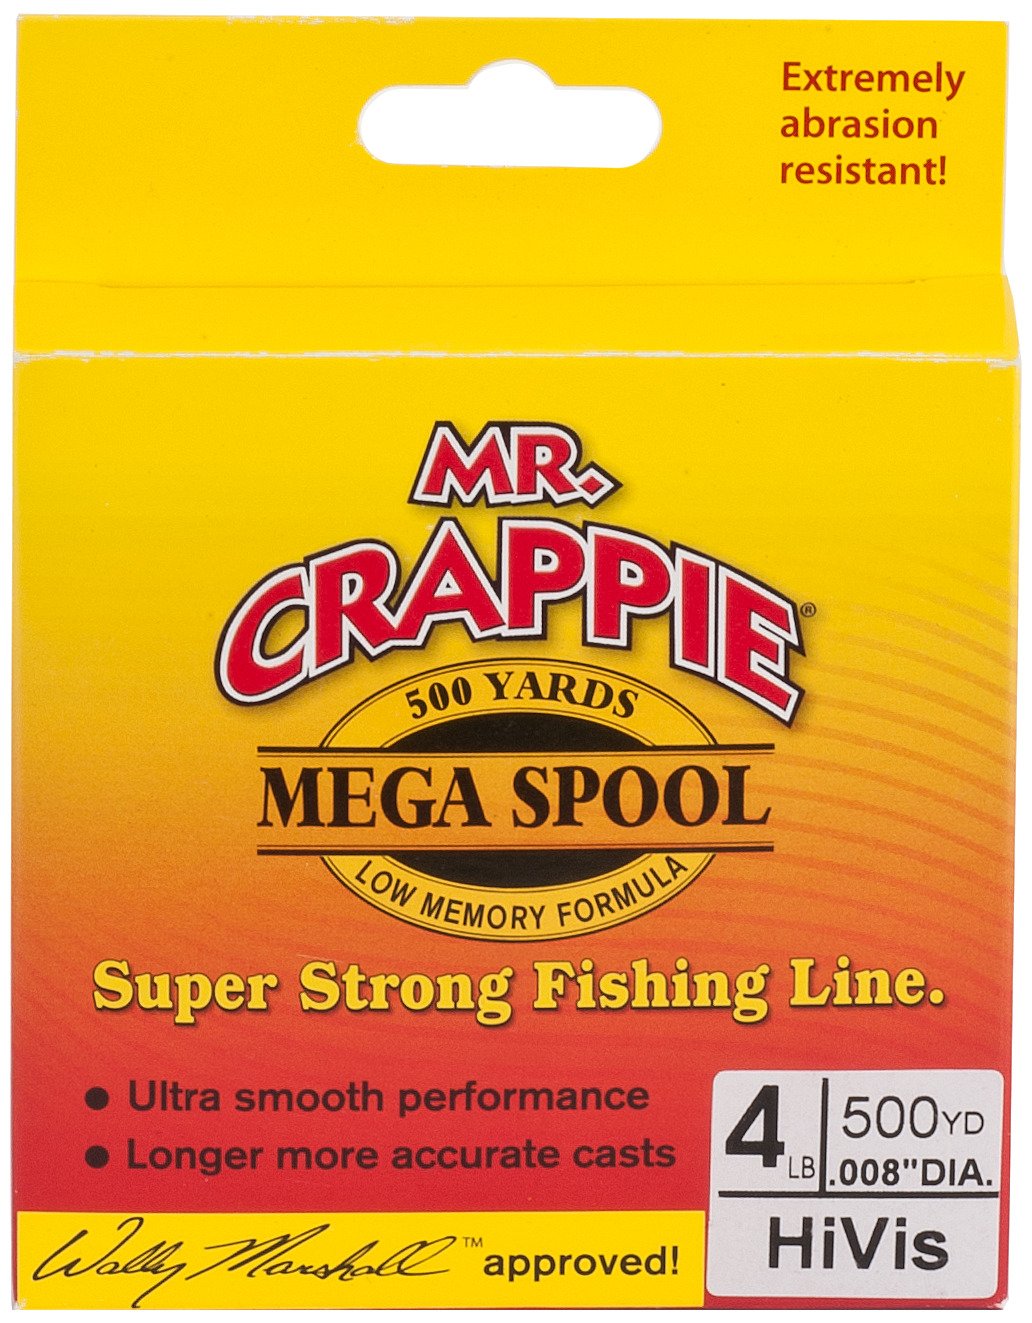 Mr. Crappie 6 Pound Hi Viz Monofilament Fishing Line 100 Yard Spool, Size: 6-Pound